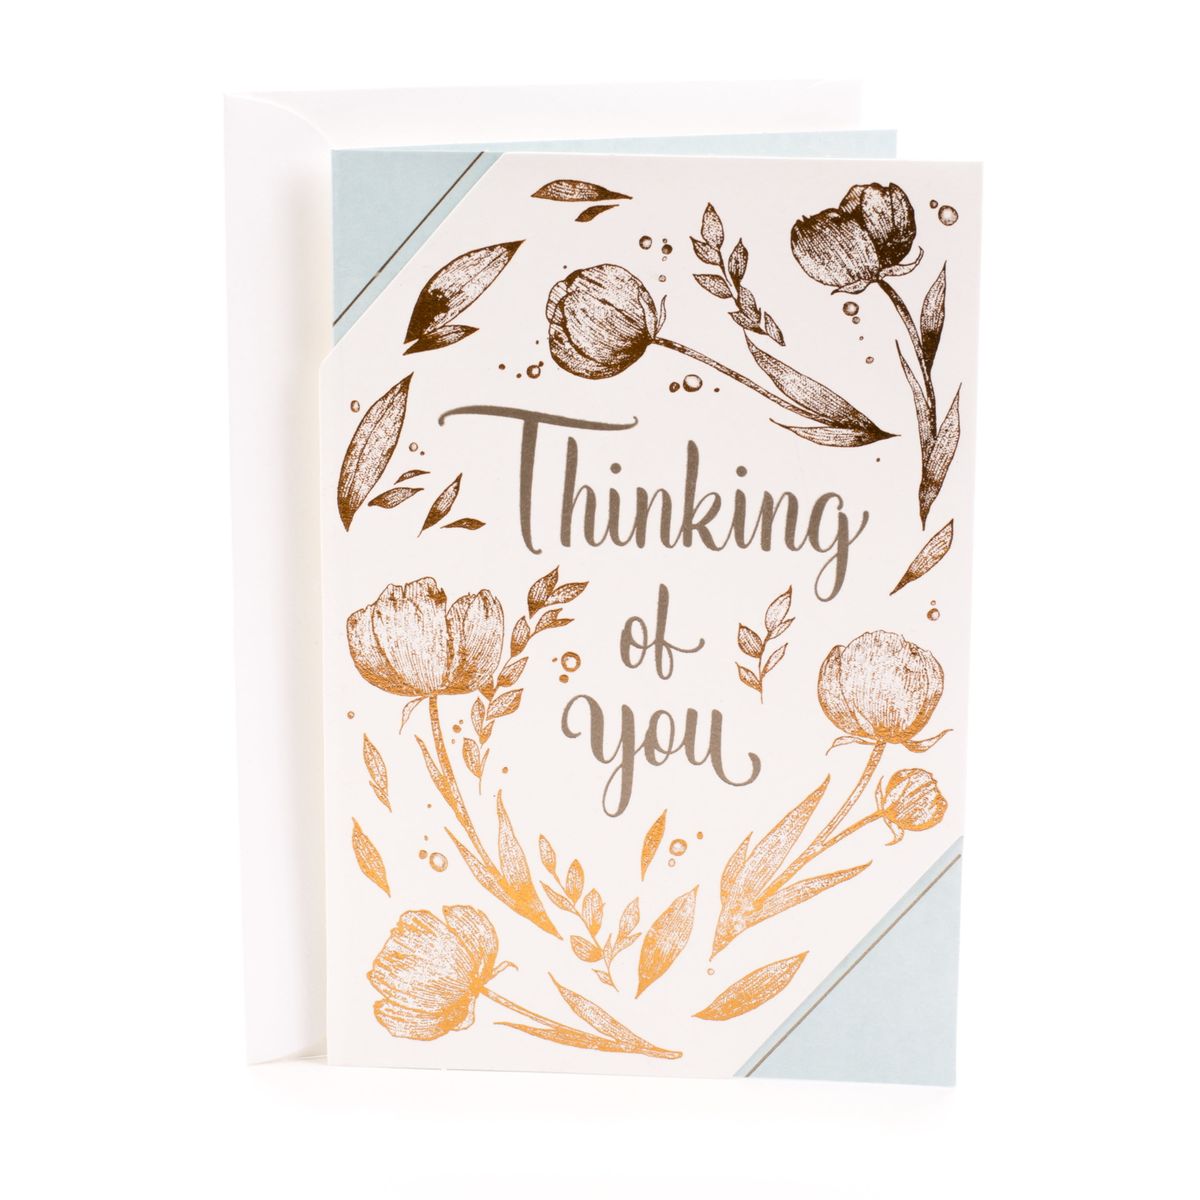 格安SALEスタート！ ファッションの 送料無料 Hallmark Thinking of You カード Brighten Your Day フラワーパターン 海外通販 Card Flower Pattern flashshare.com flashshare.com